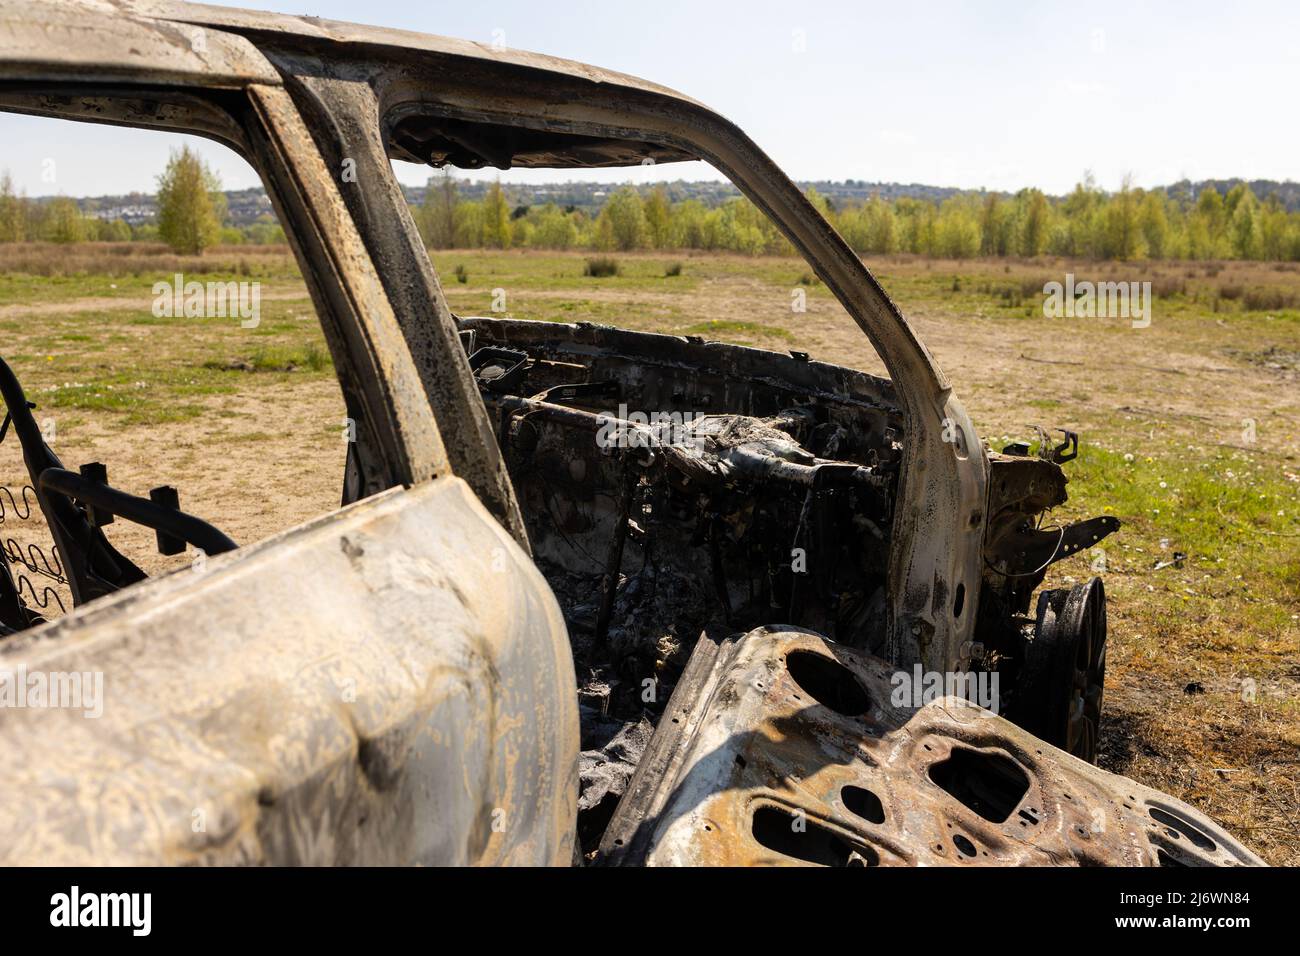 Newburn Reino Unido: 29th de abril de 2022: Un coche robado que ha sido quemado y vertido en un campo. Peugeot de coche pequeño con forma de 208, sin logotipo Foto de stock